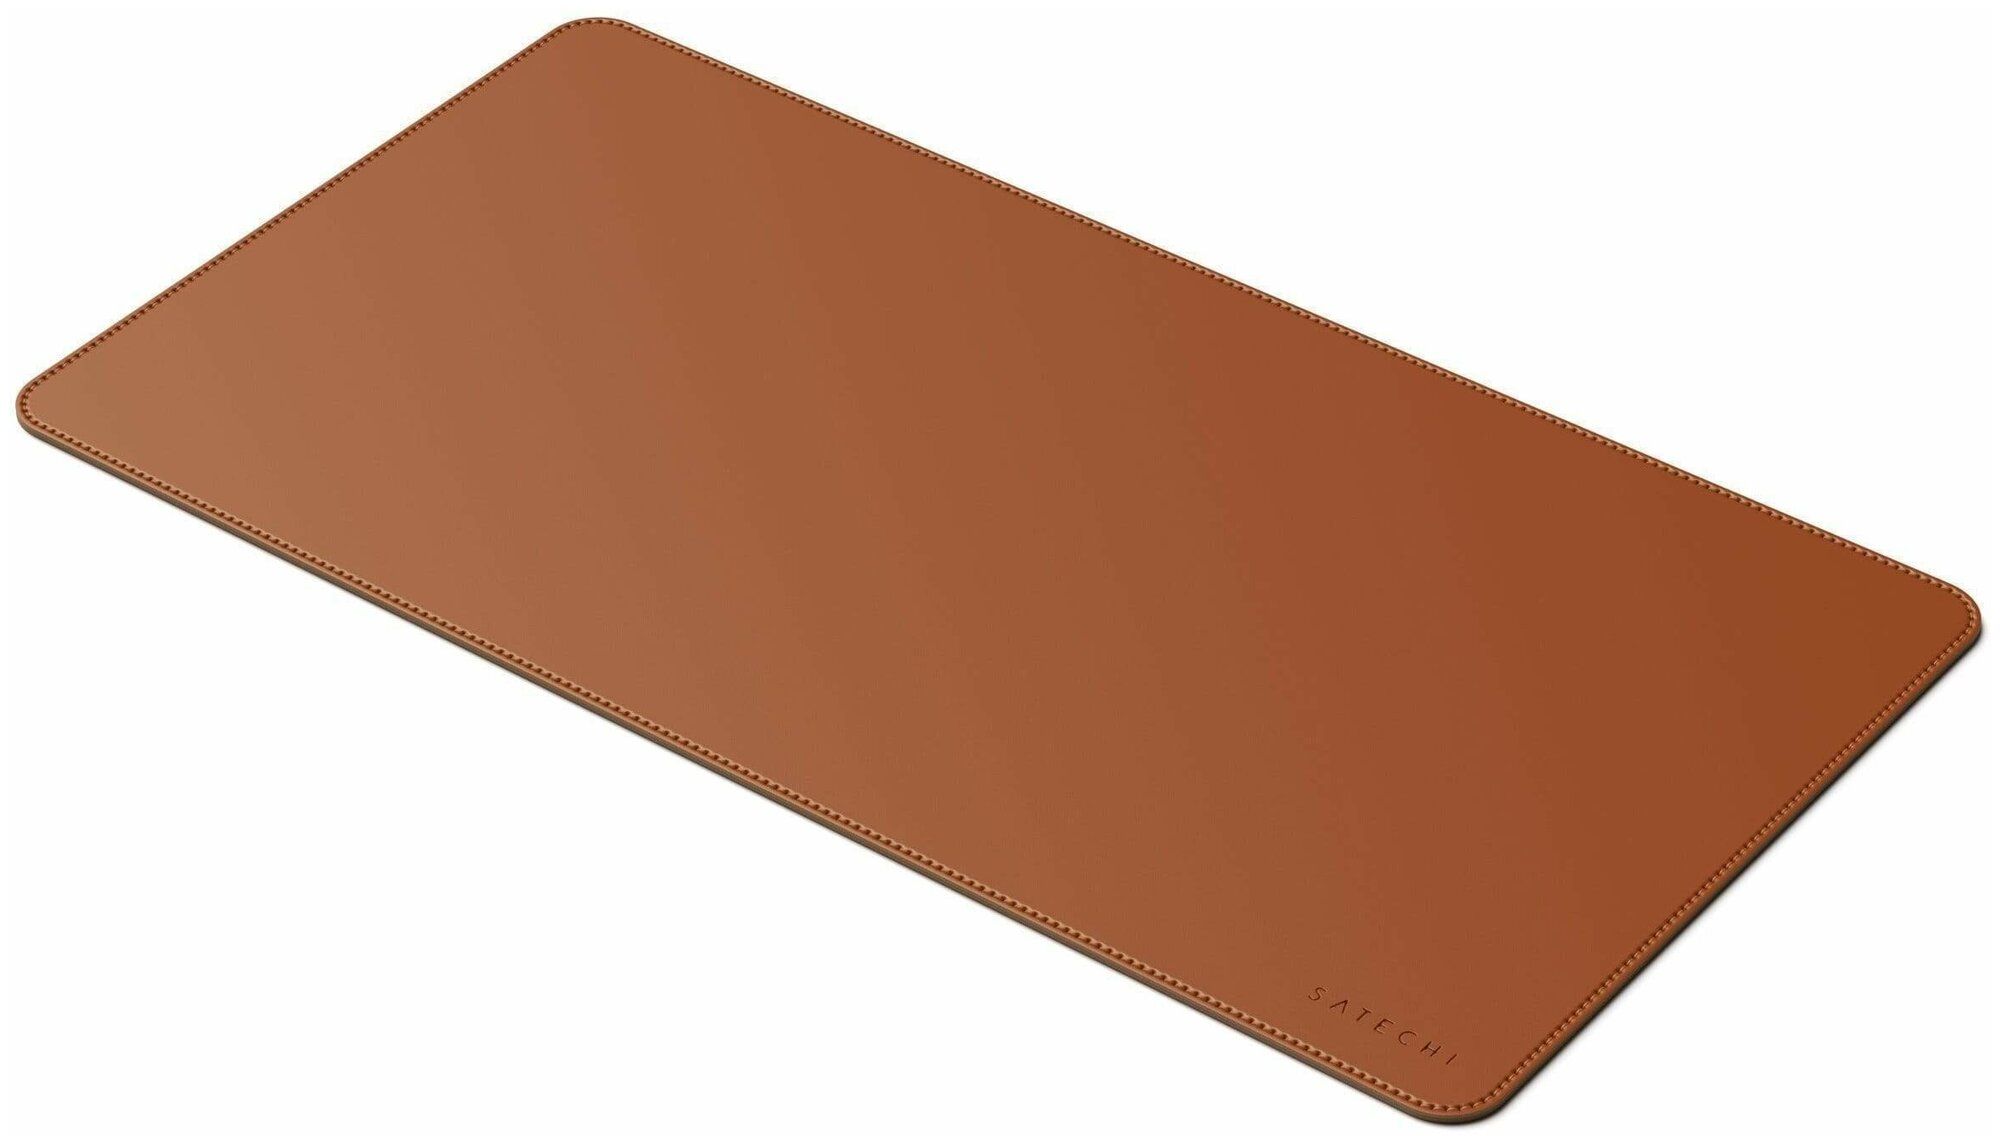 Коврик Satechi Eco Leather Deskmate Размер 58,5 x 31 см. коричневый